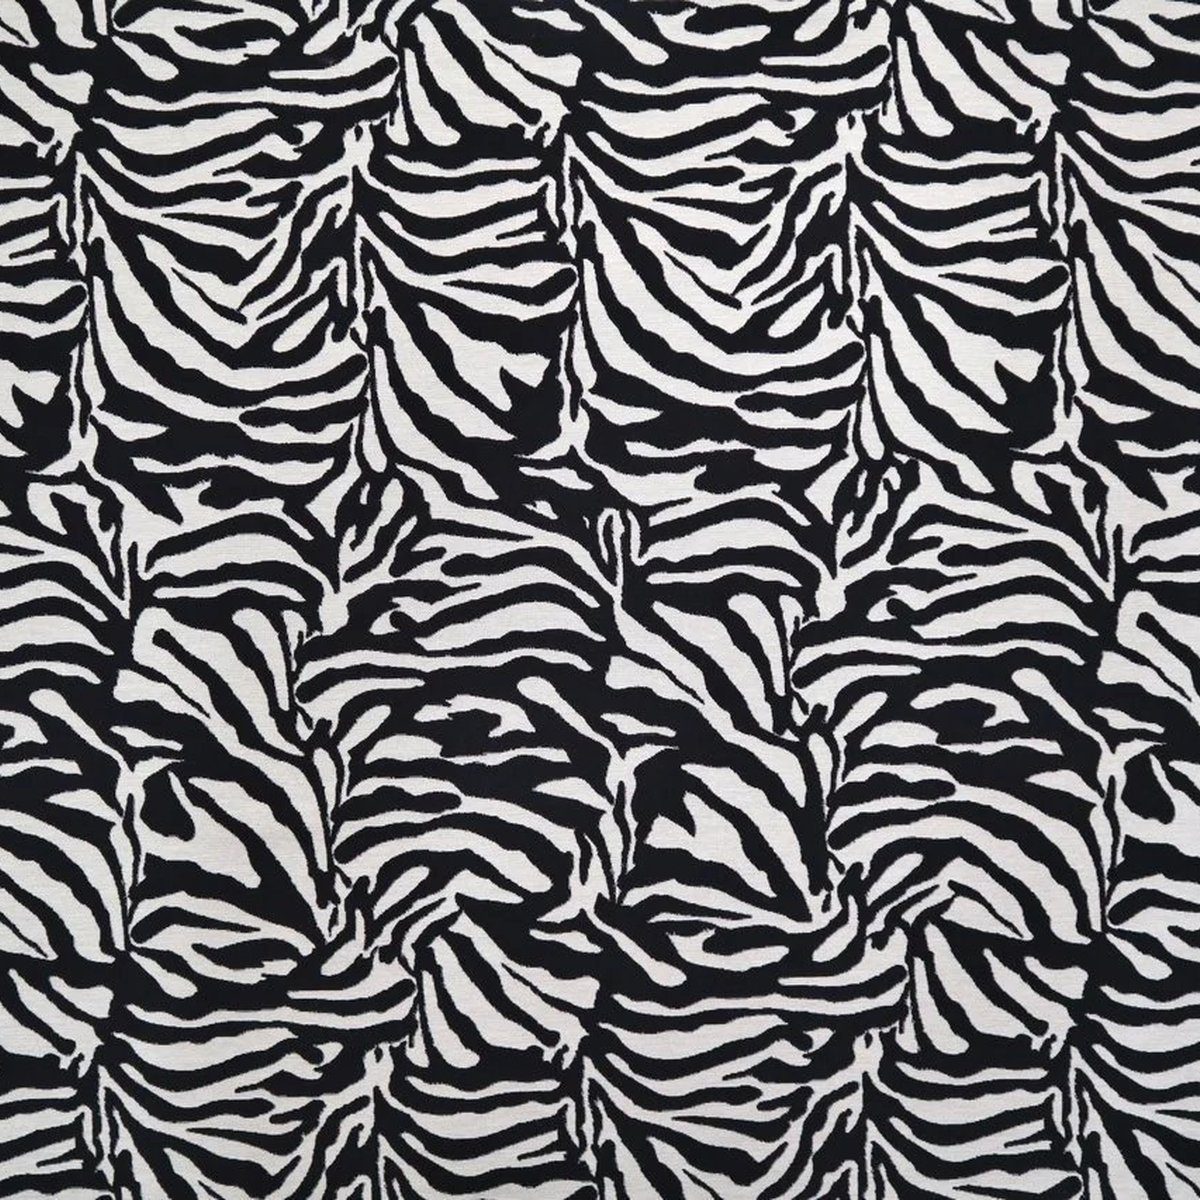 Stofferia Stoff Polsterstoff Gobelin Zebra Skin Schwarzweiß, Breite 140 cm,  Meterware